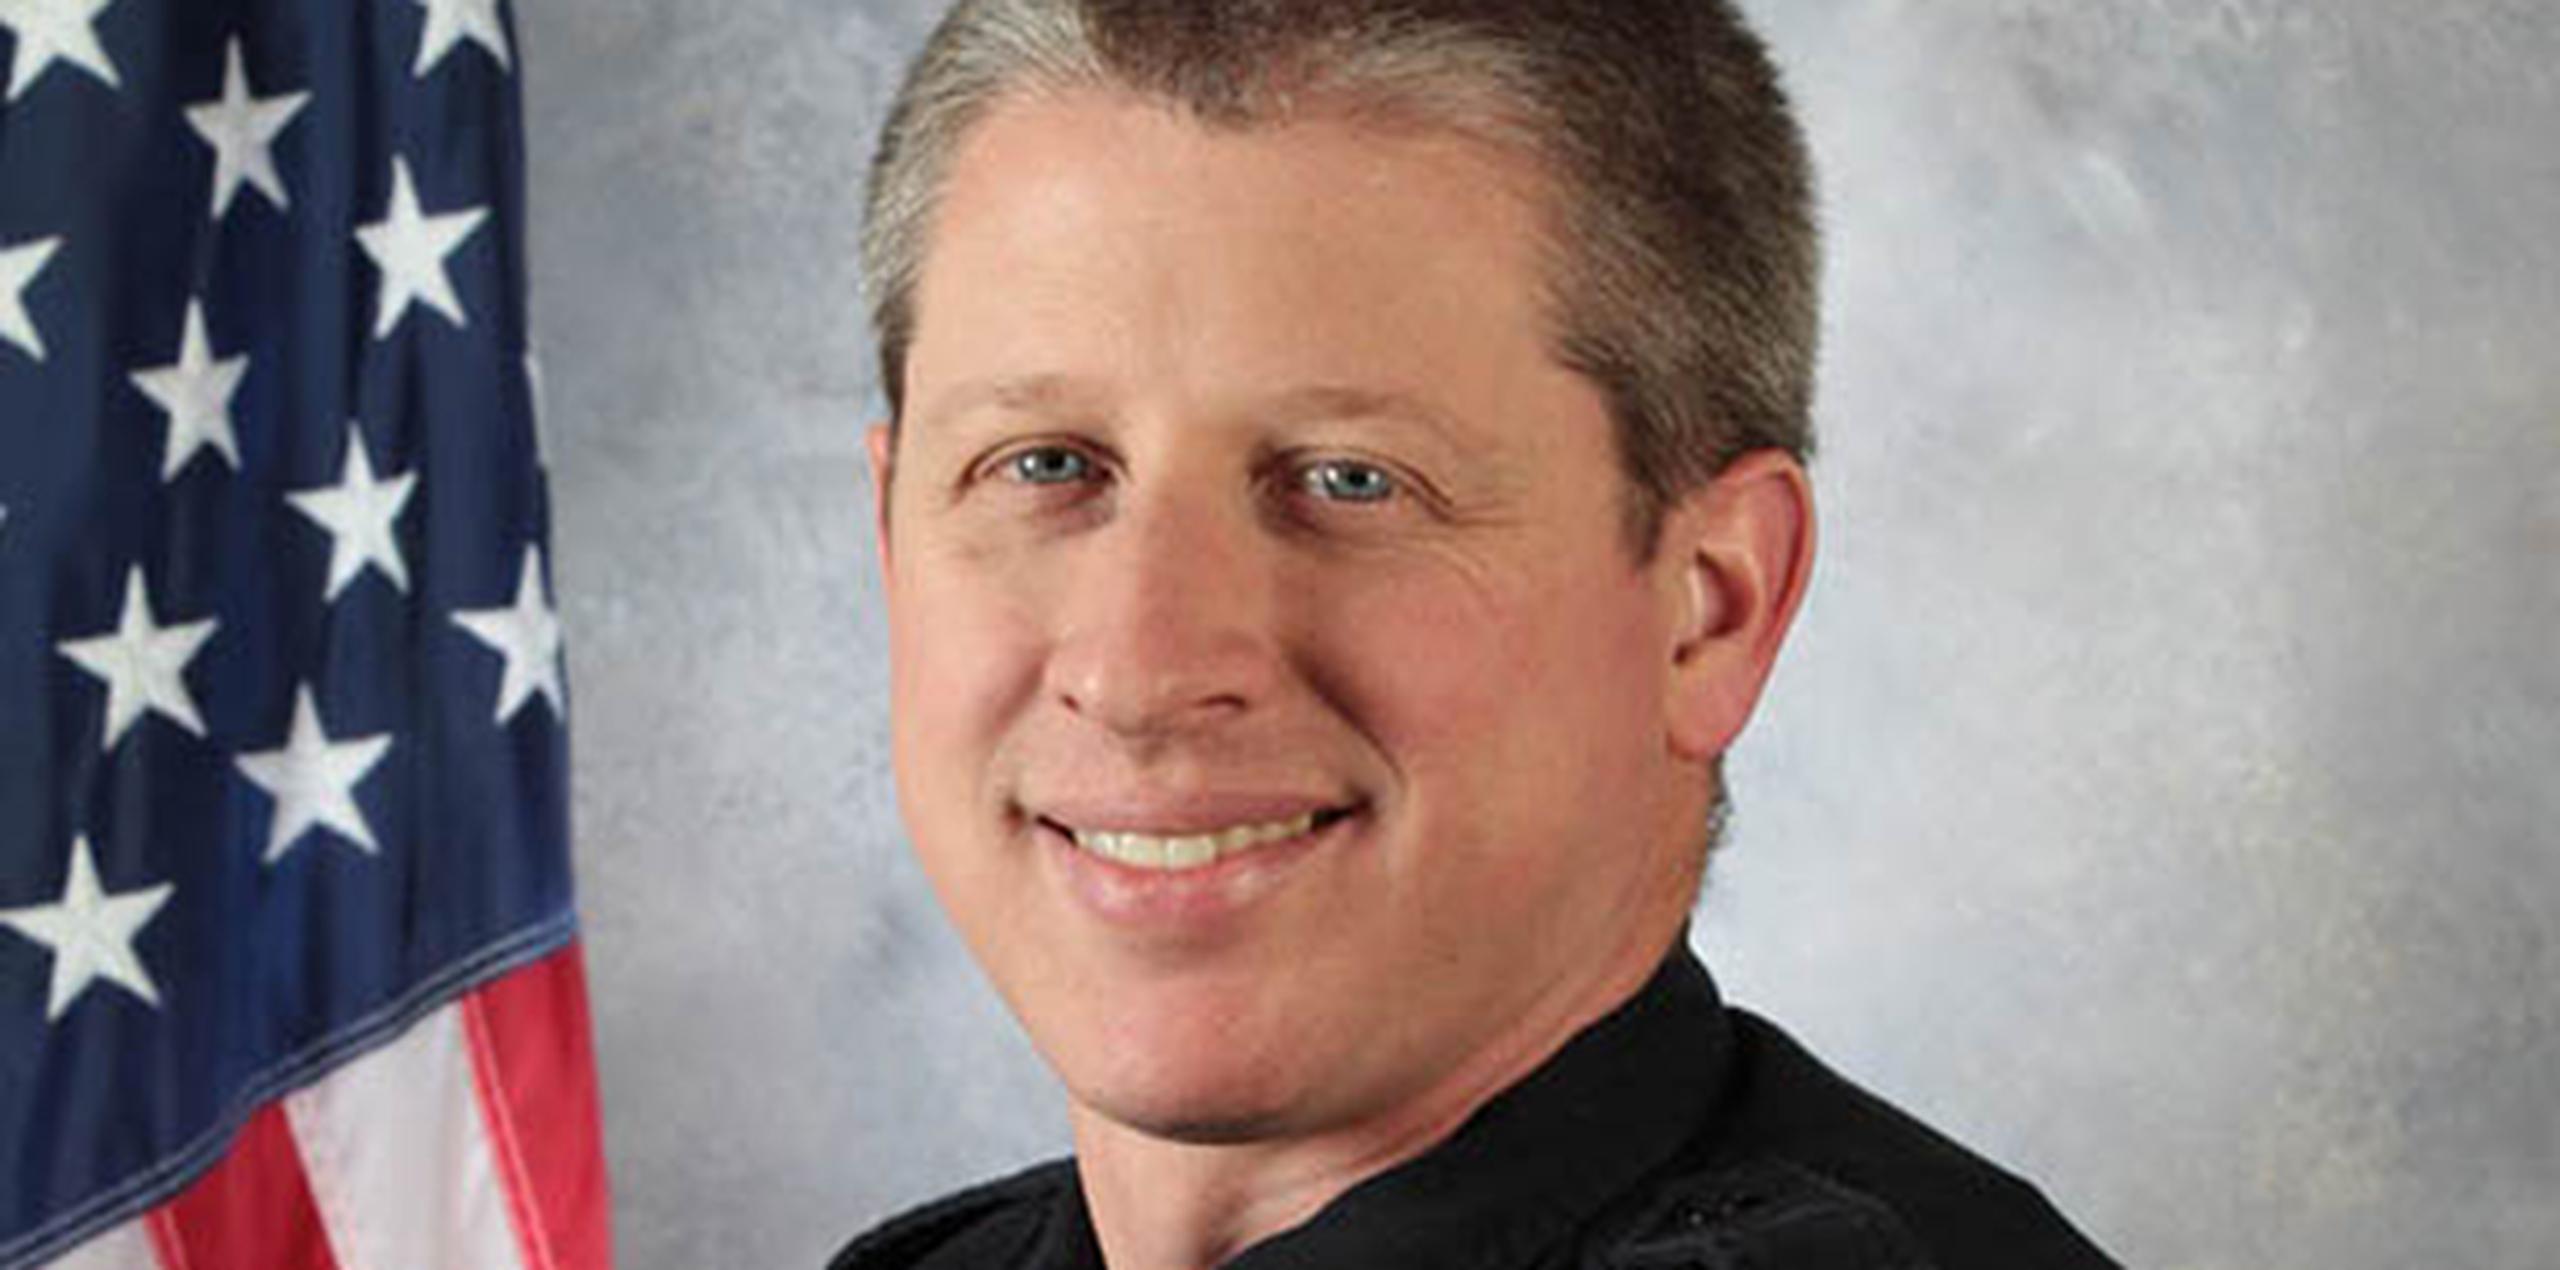 El departamento de policía del campus de Colorado Springs identificó al agente caído como Garrett Swasey, de 44 años y con seis de experiencia en el cargo. Además lideraba la iglesia Hope Chapel, en el norte de Colorado Springs. (University of Colorado at Colorado Springs via AP)
